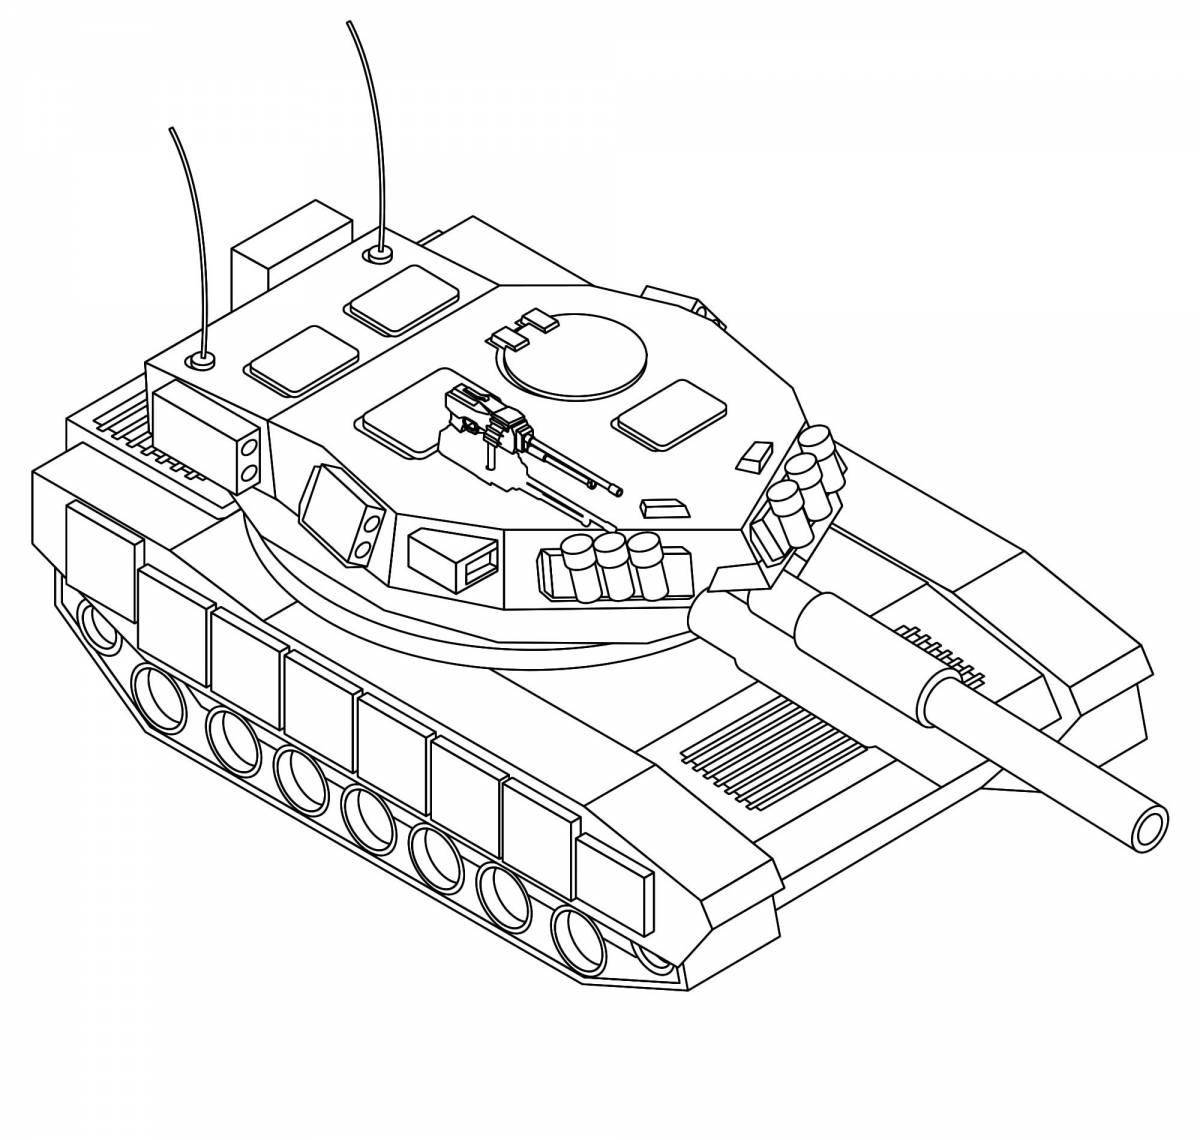 Coloring page charming tank t 14 armata